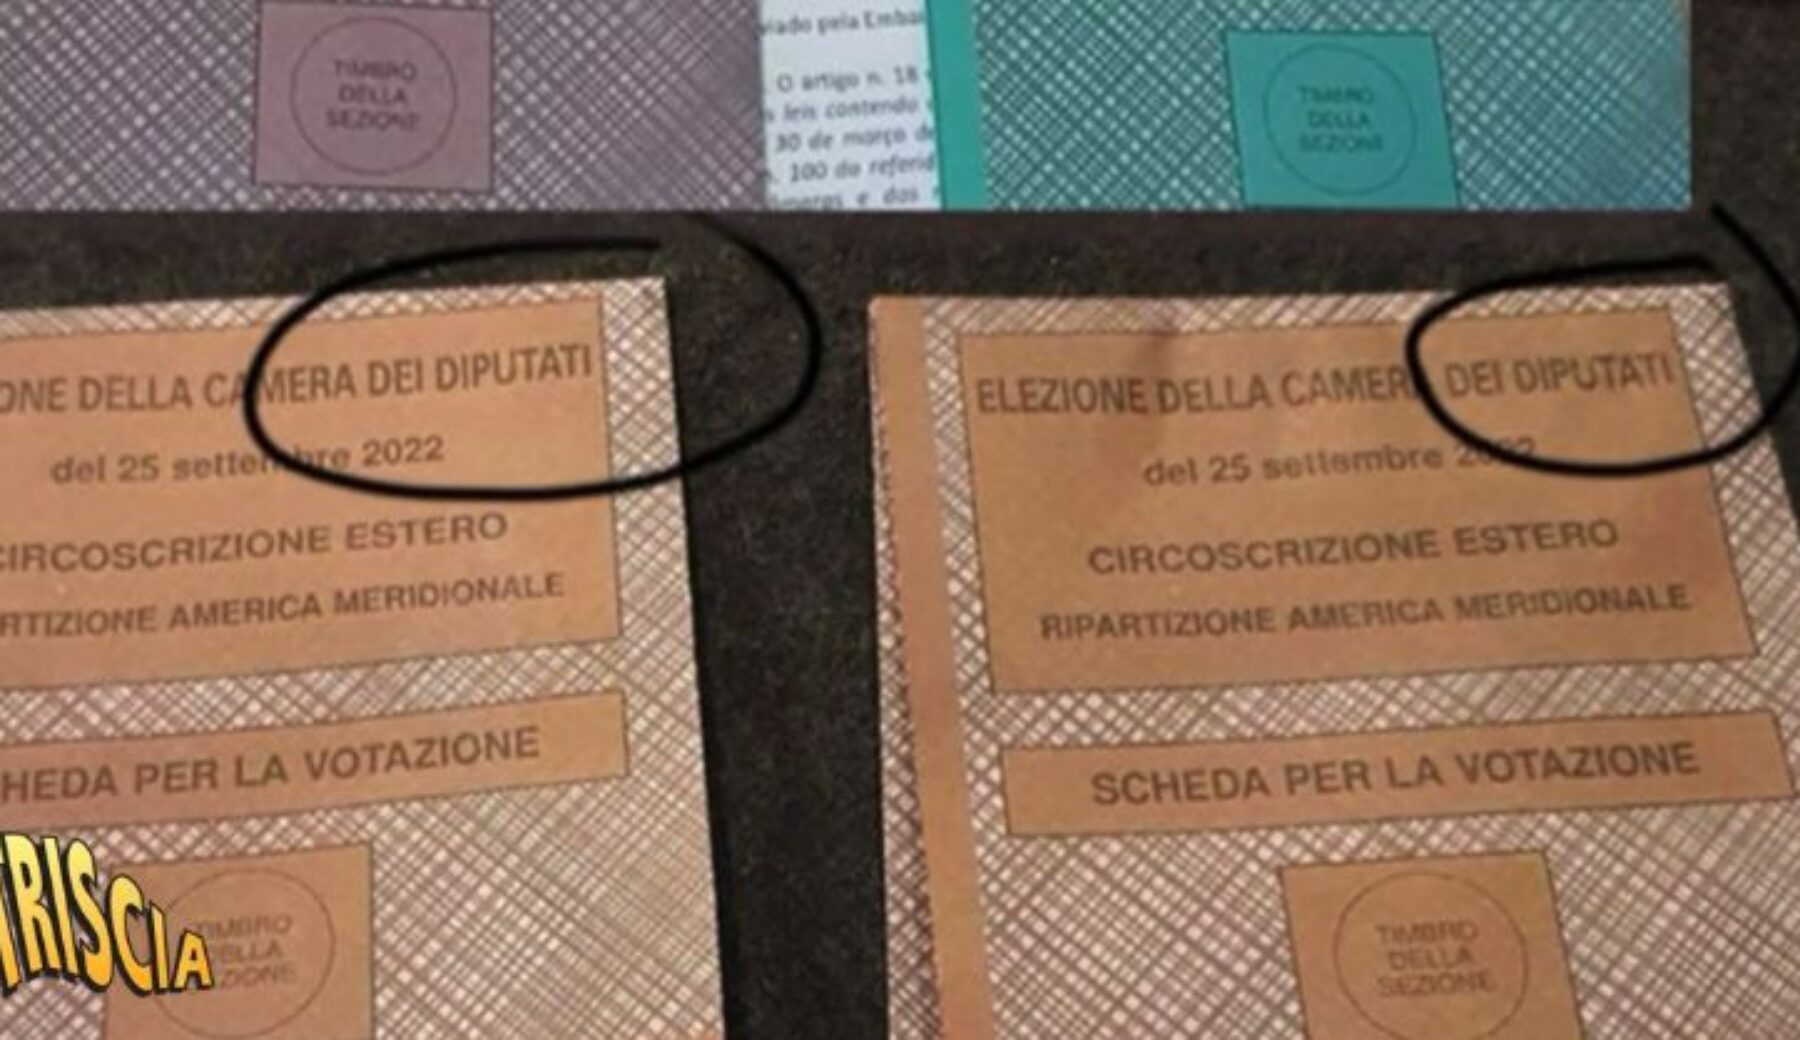 Scandalo voto all’estero: circa 35.000 schede false con la dicitura Camera dei “diputati”